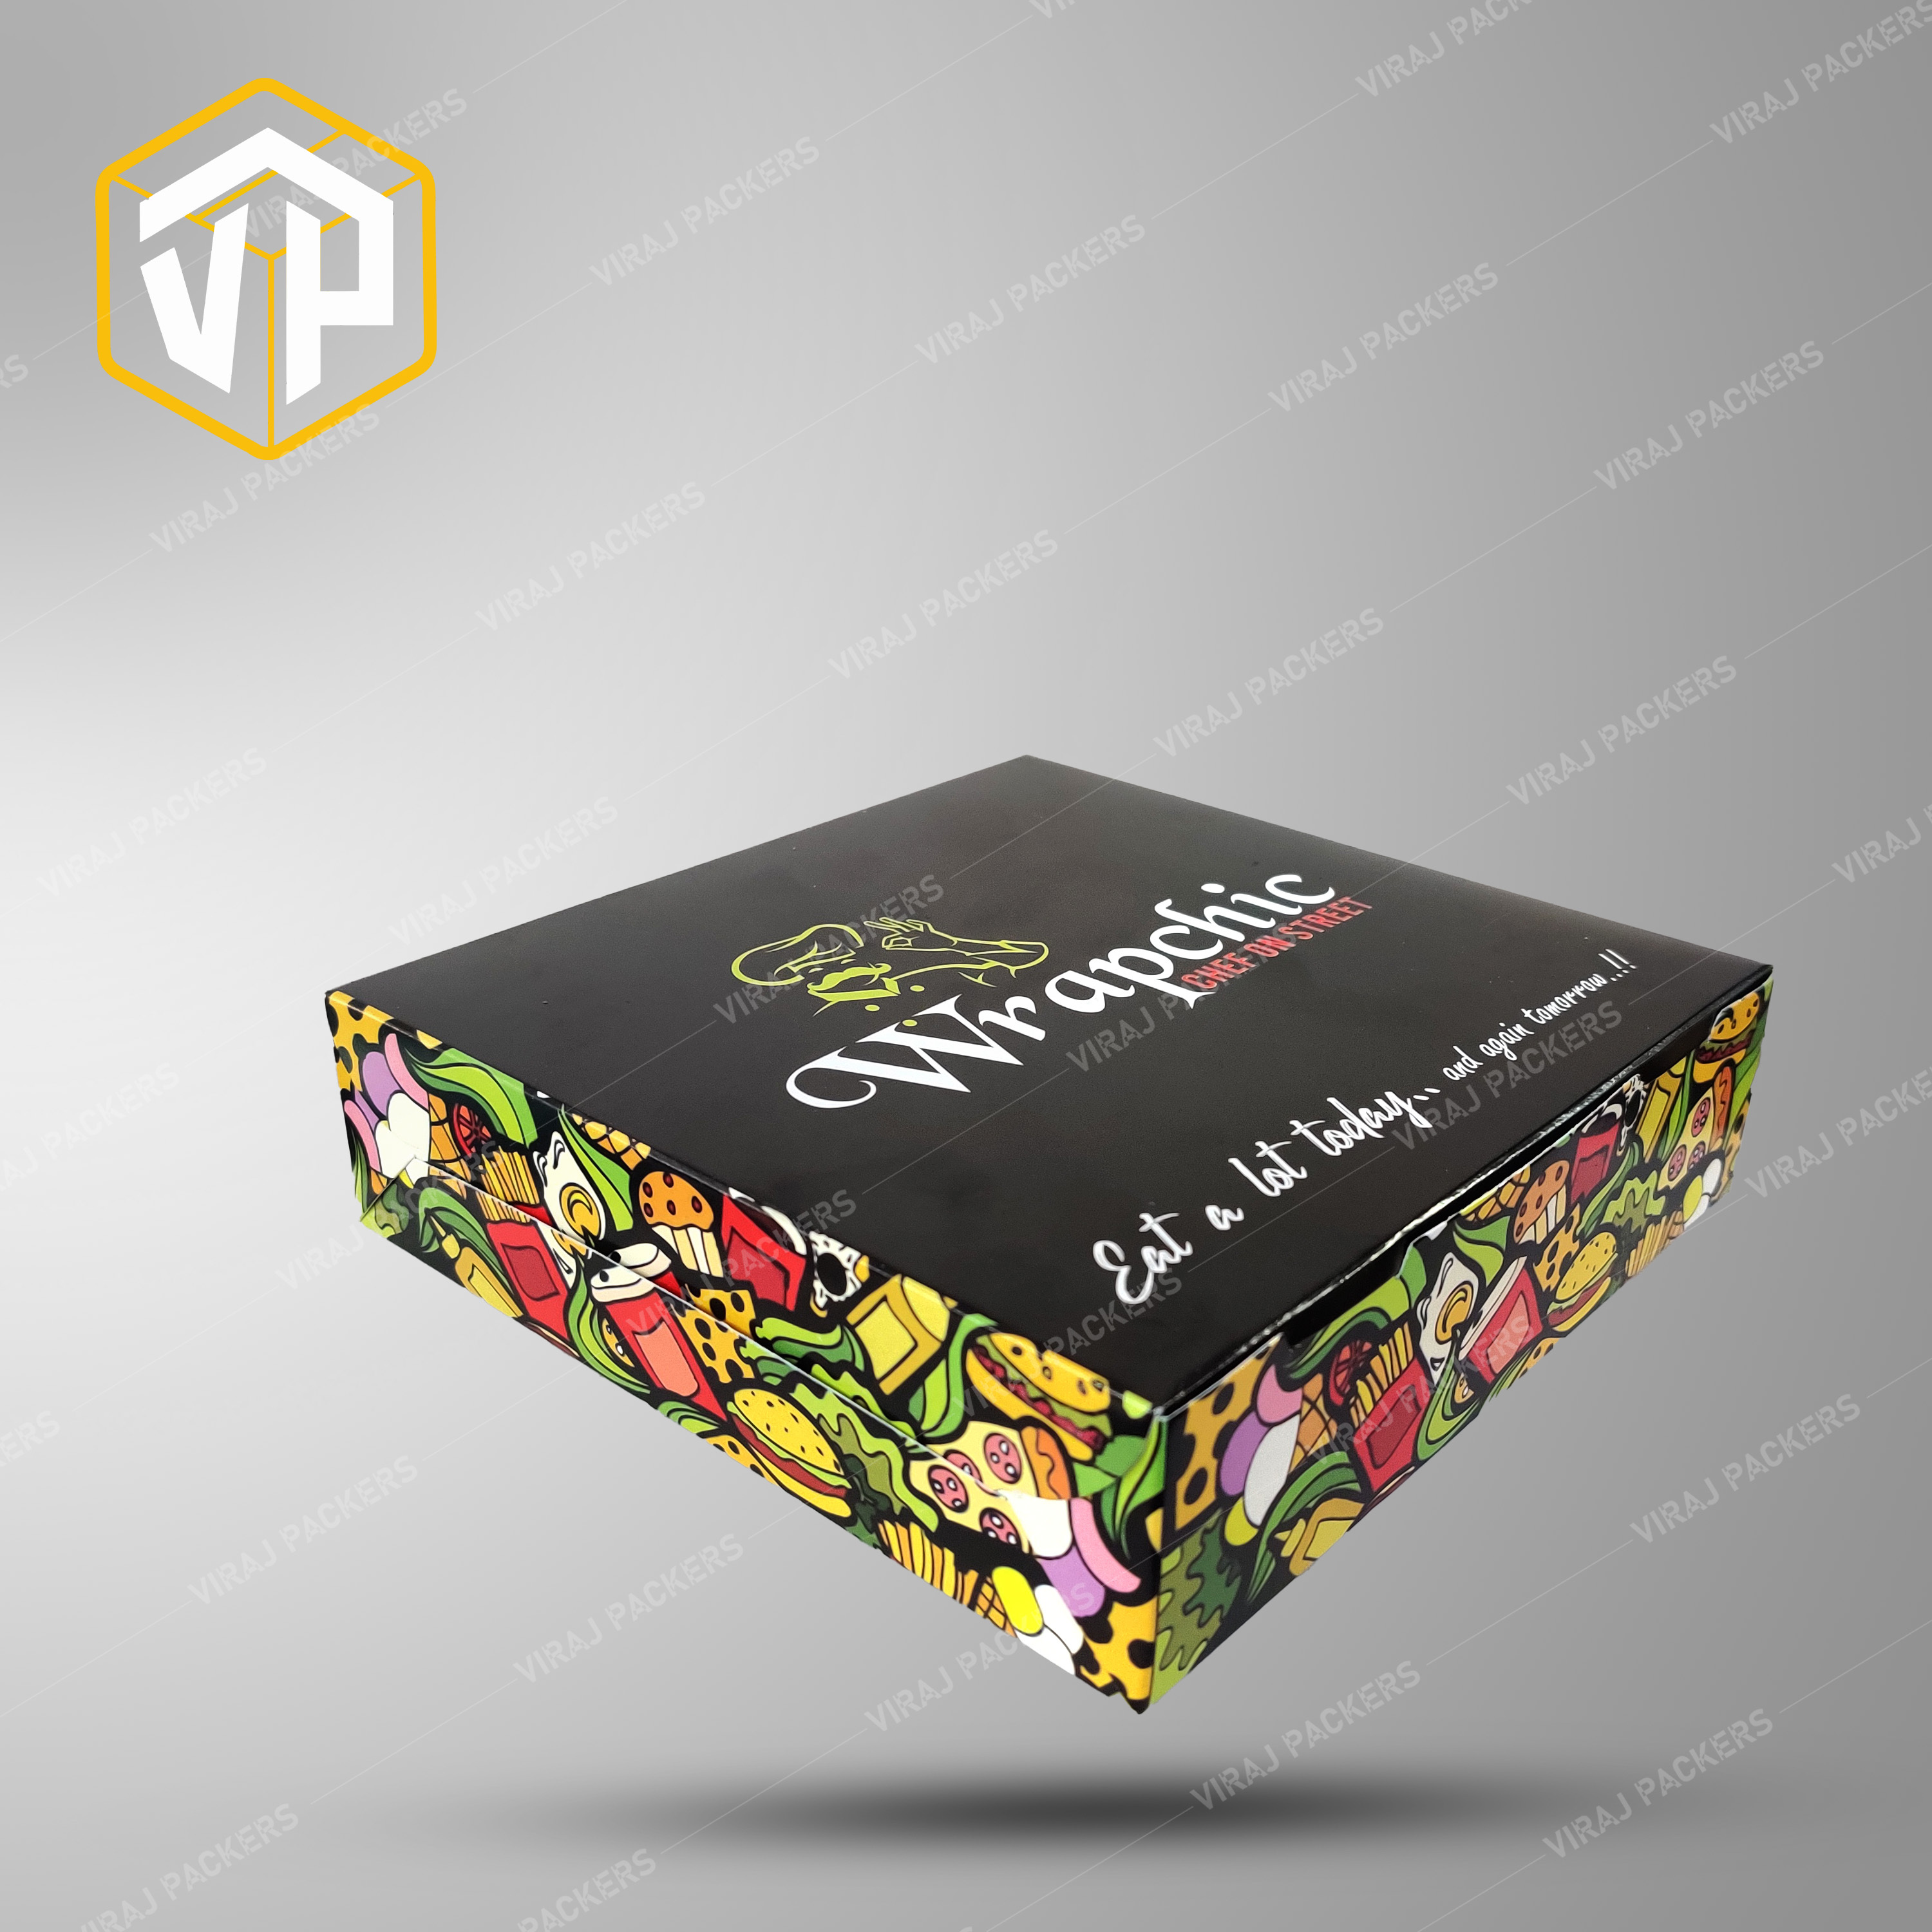 Sandwich Packaging Box / Jumbo Sandwich Packaging box / Customized Food Packaging boxaging